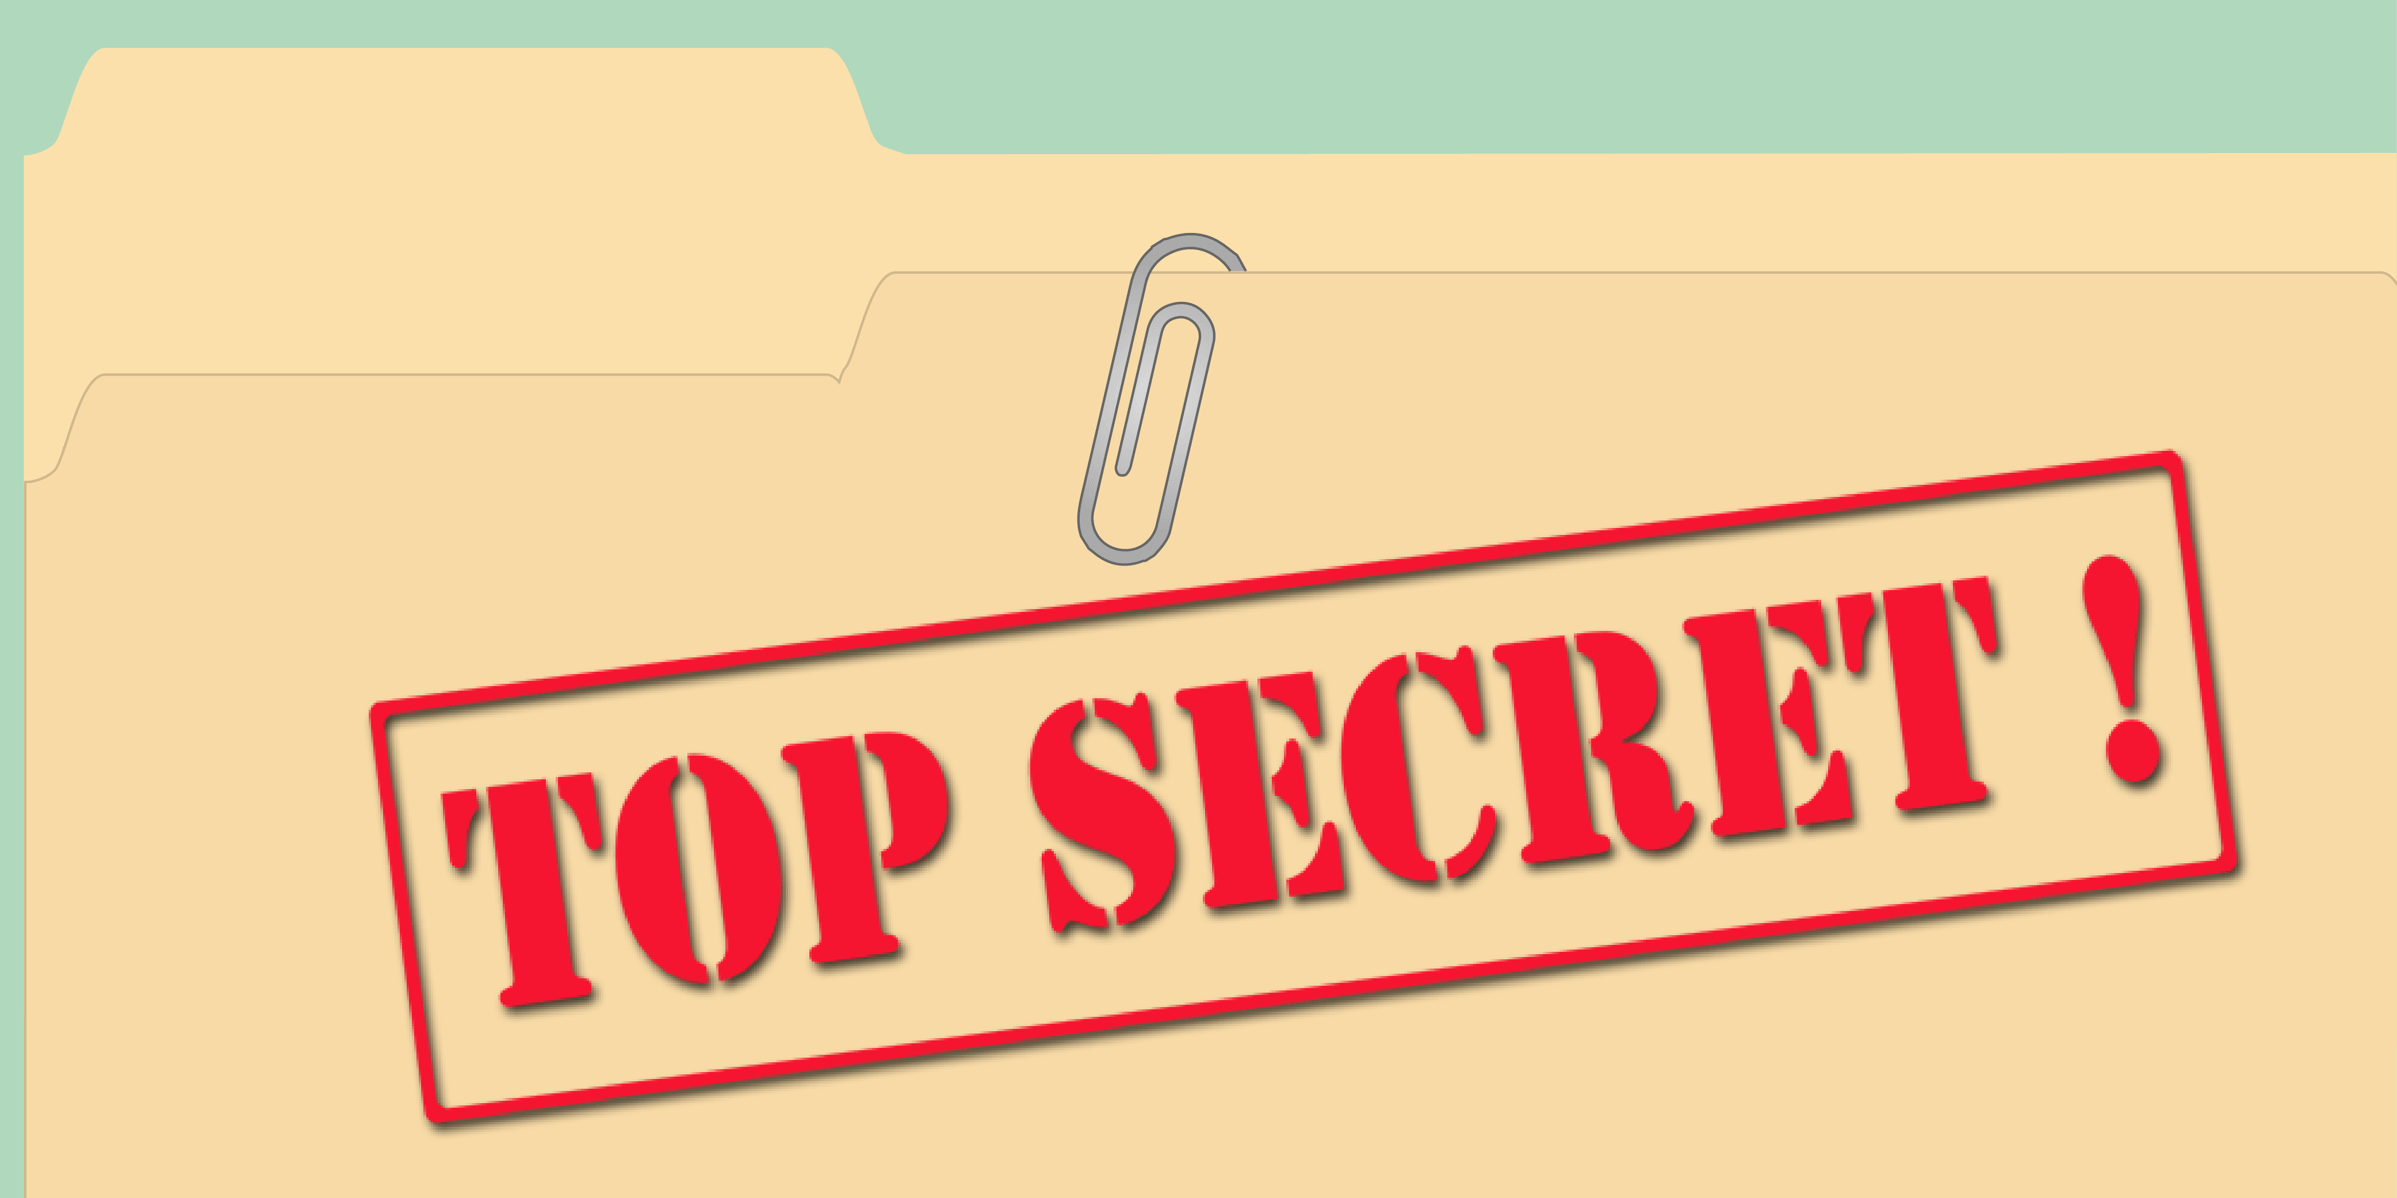 Топ секрет. Надпись Top Secret. Топ секретно. Секретно без фона.